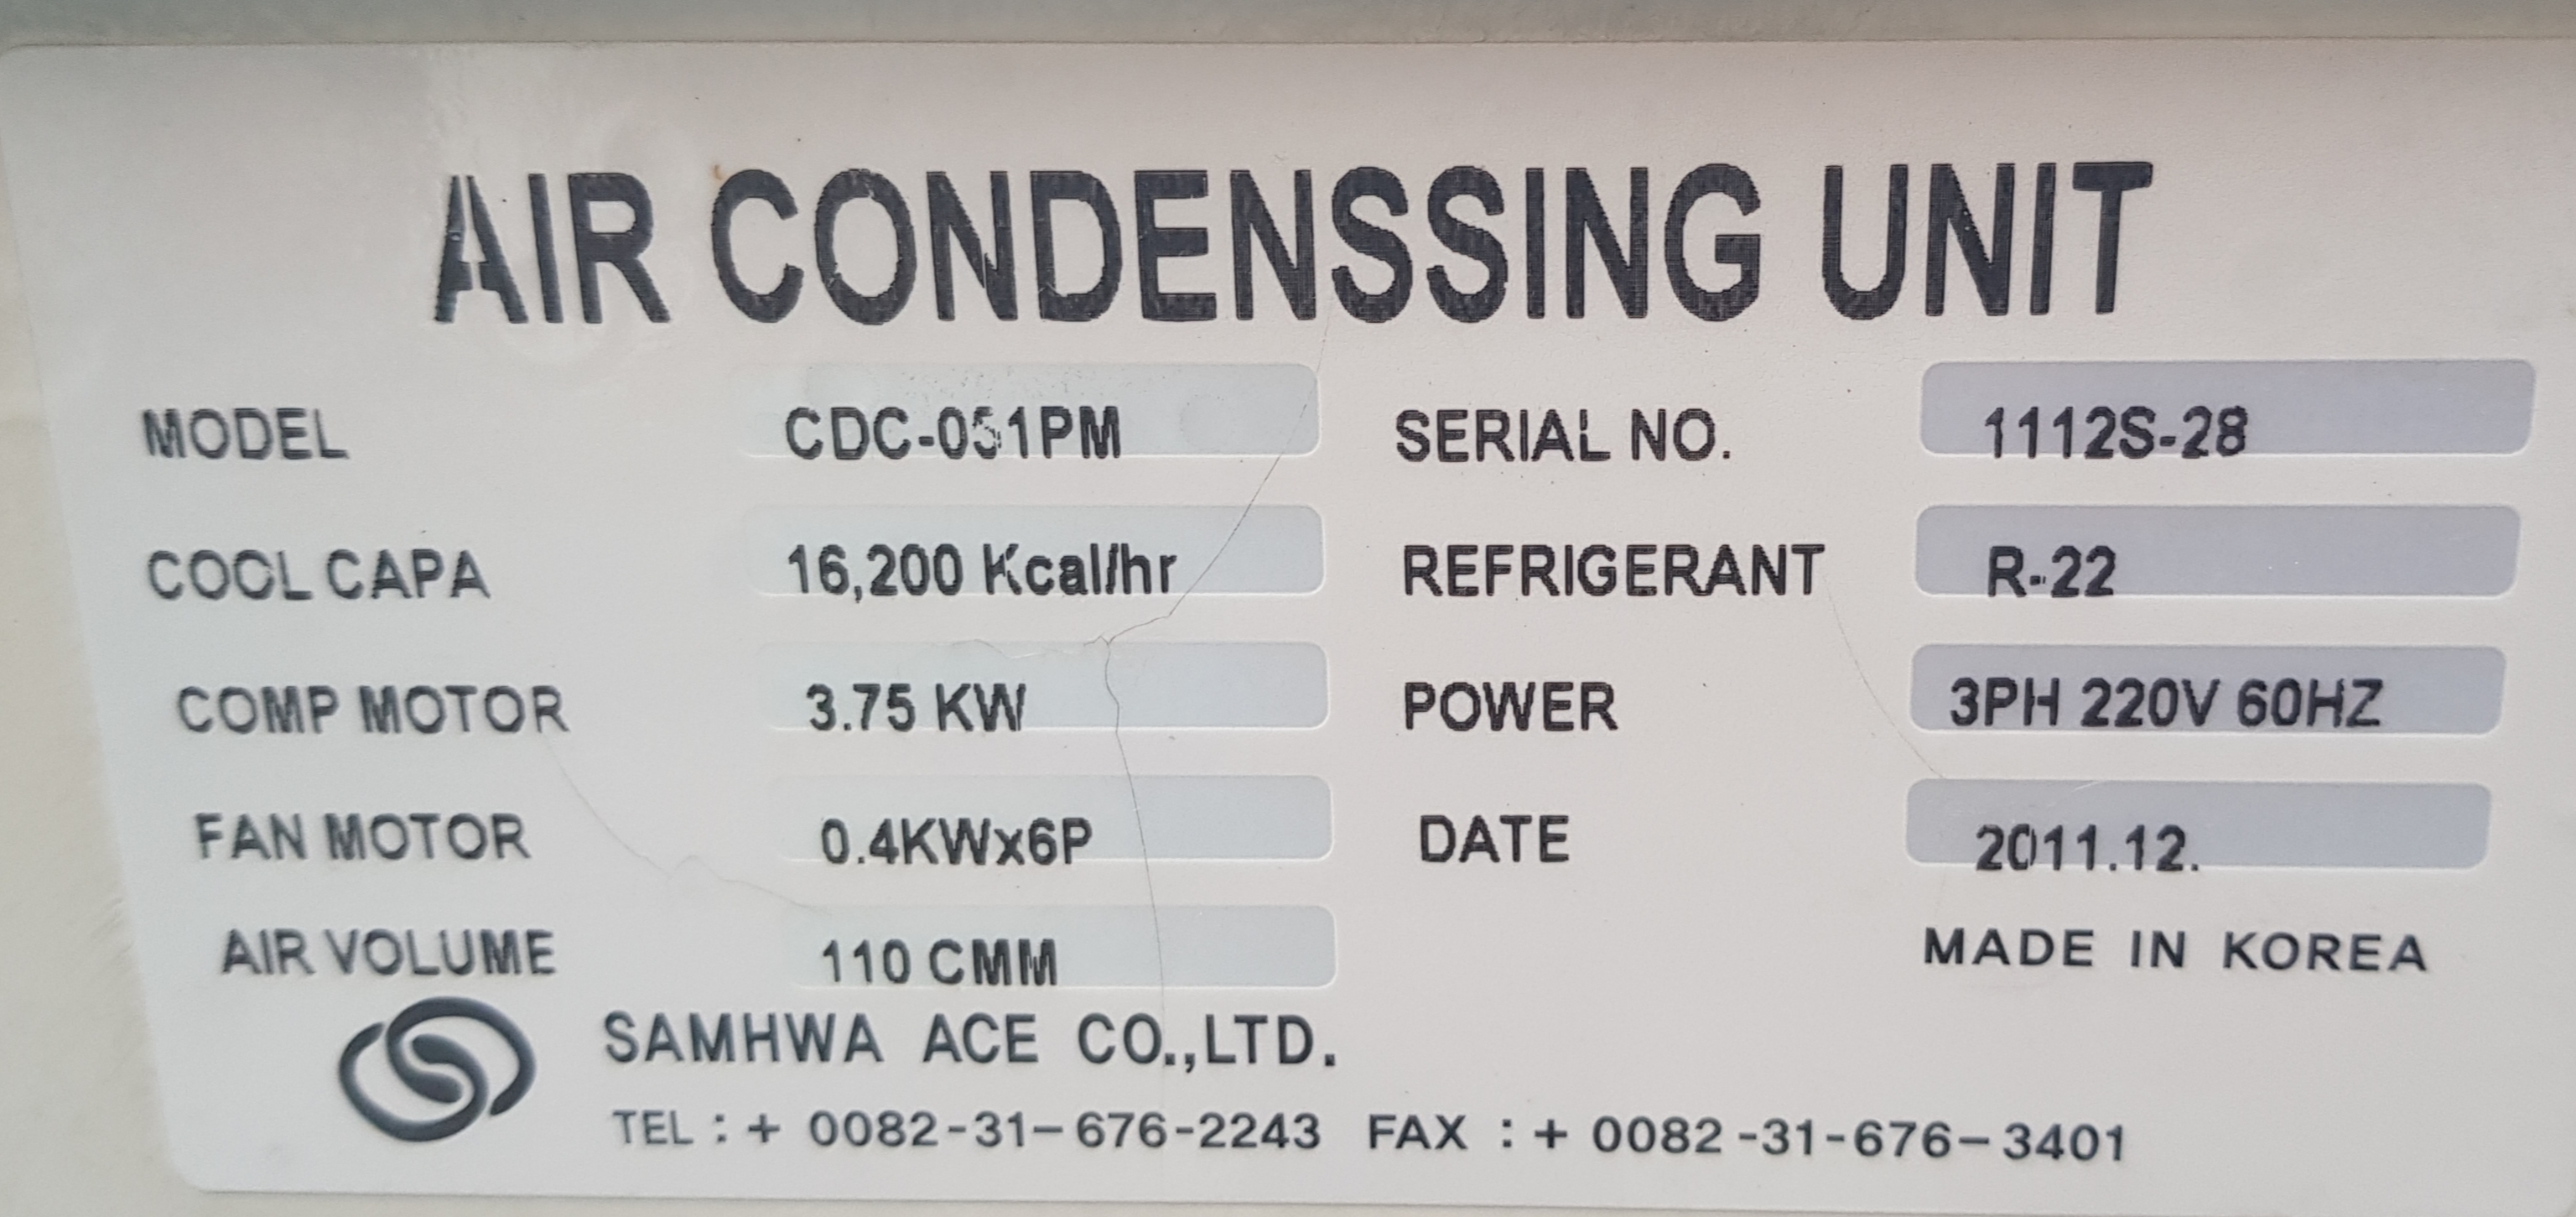 AIR CONDENSSING UNIT CDC-051PM (중고)